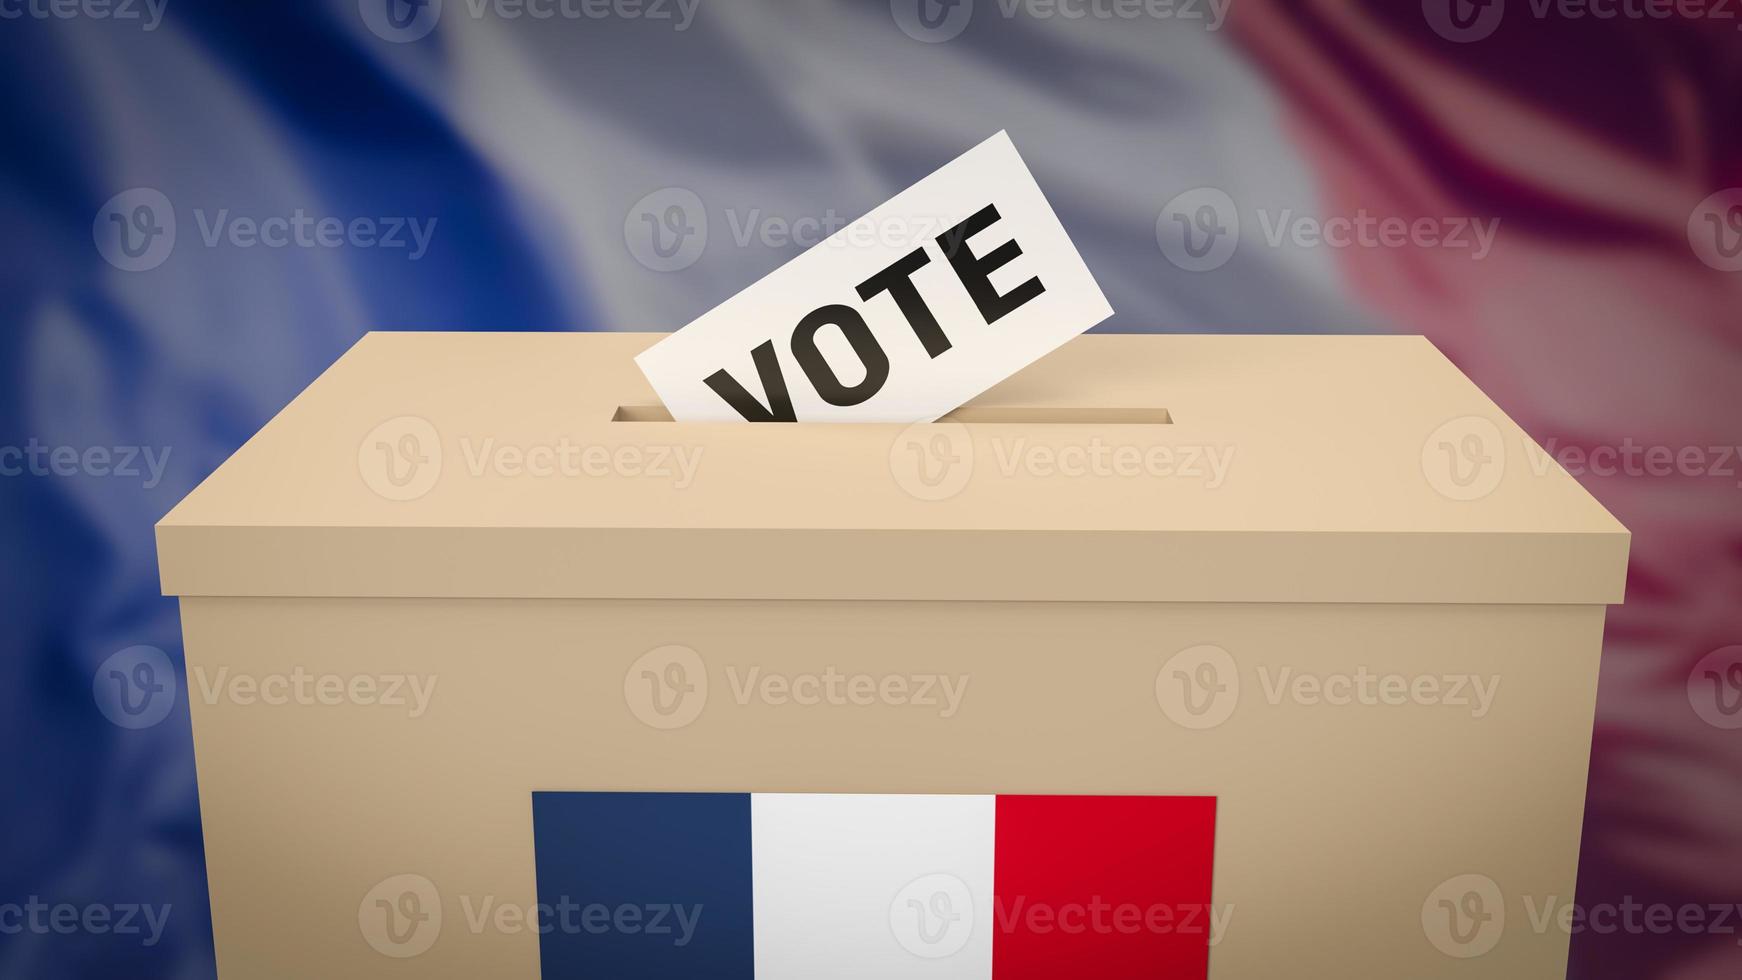 la casella e la scheda di voto per il rendering 3d delle elezioni presidenziali francesi foto